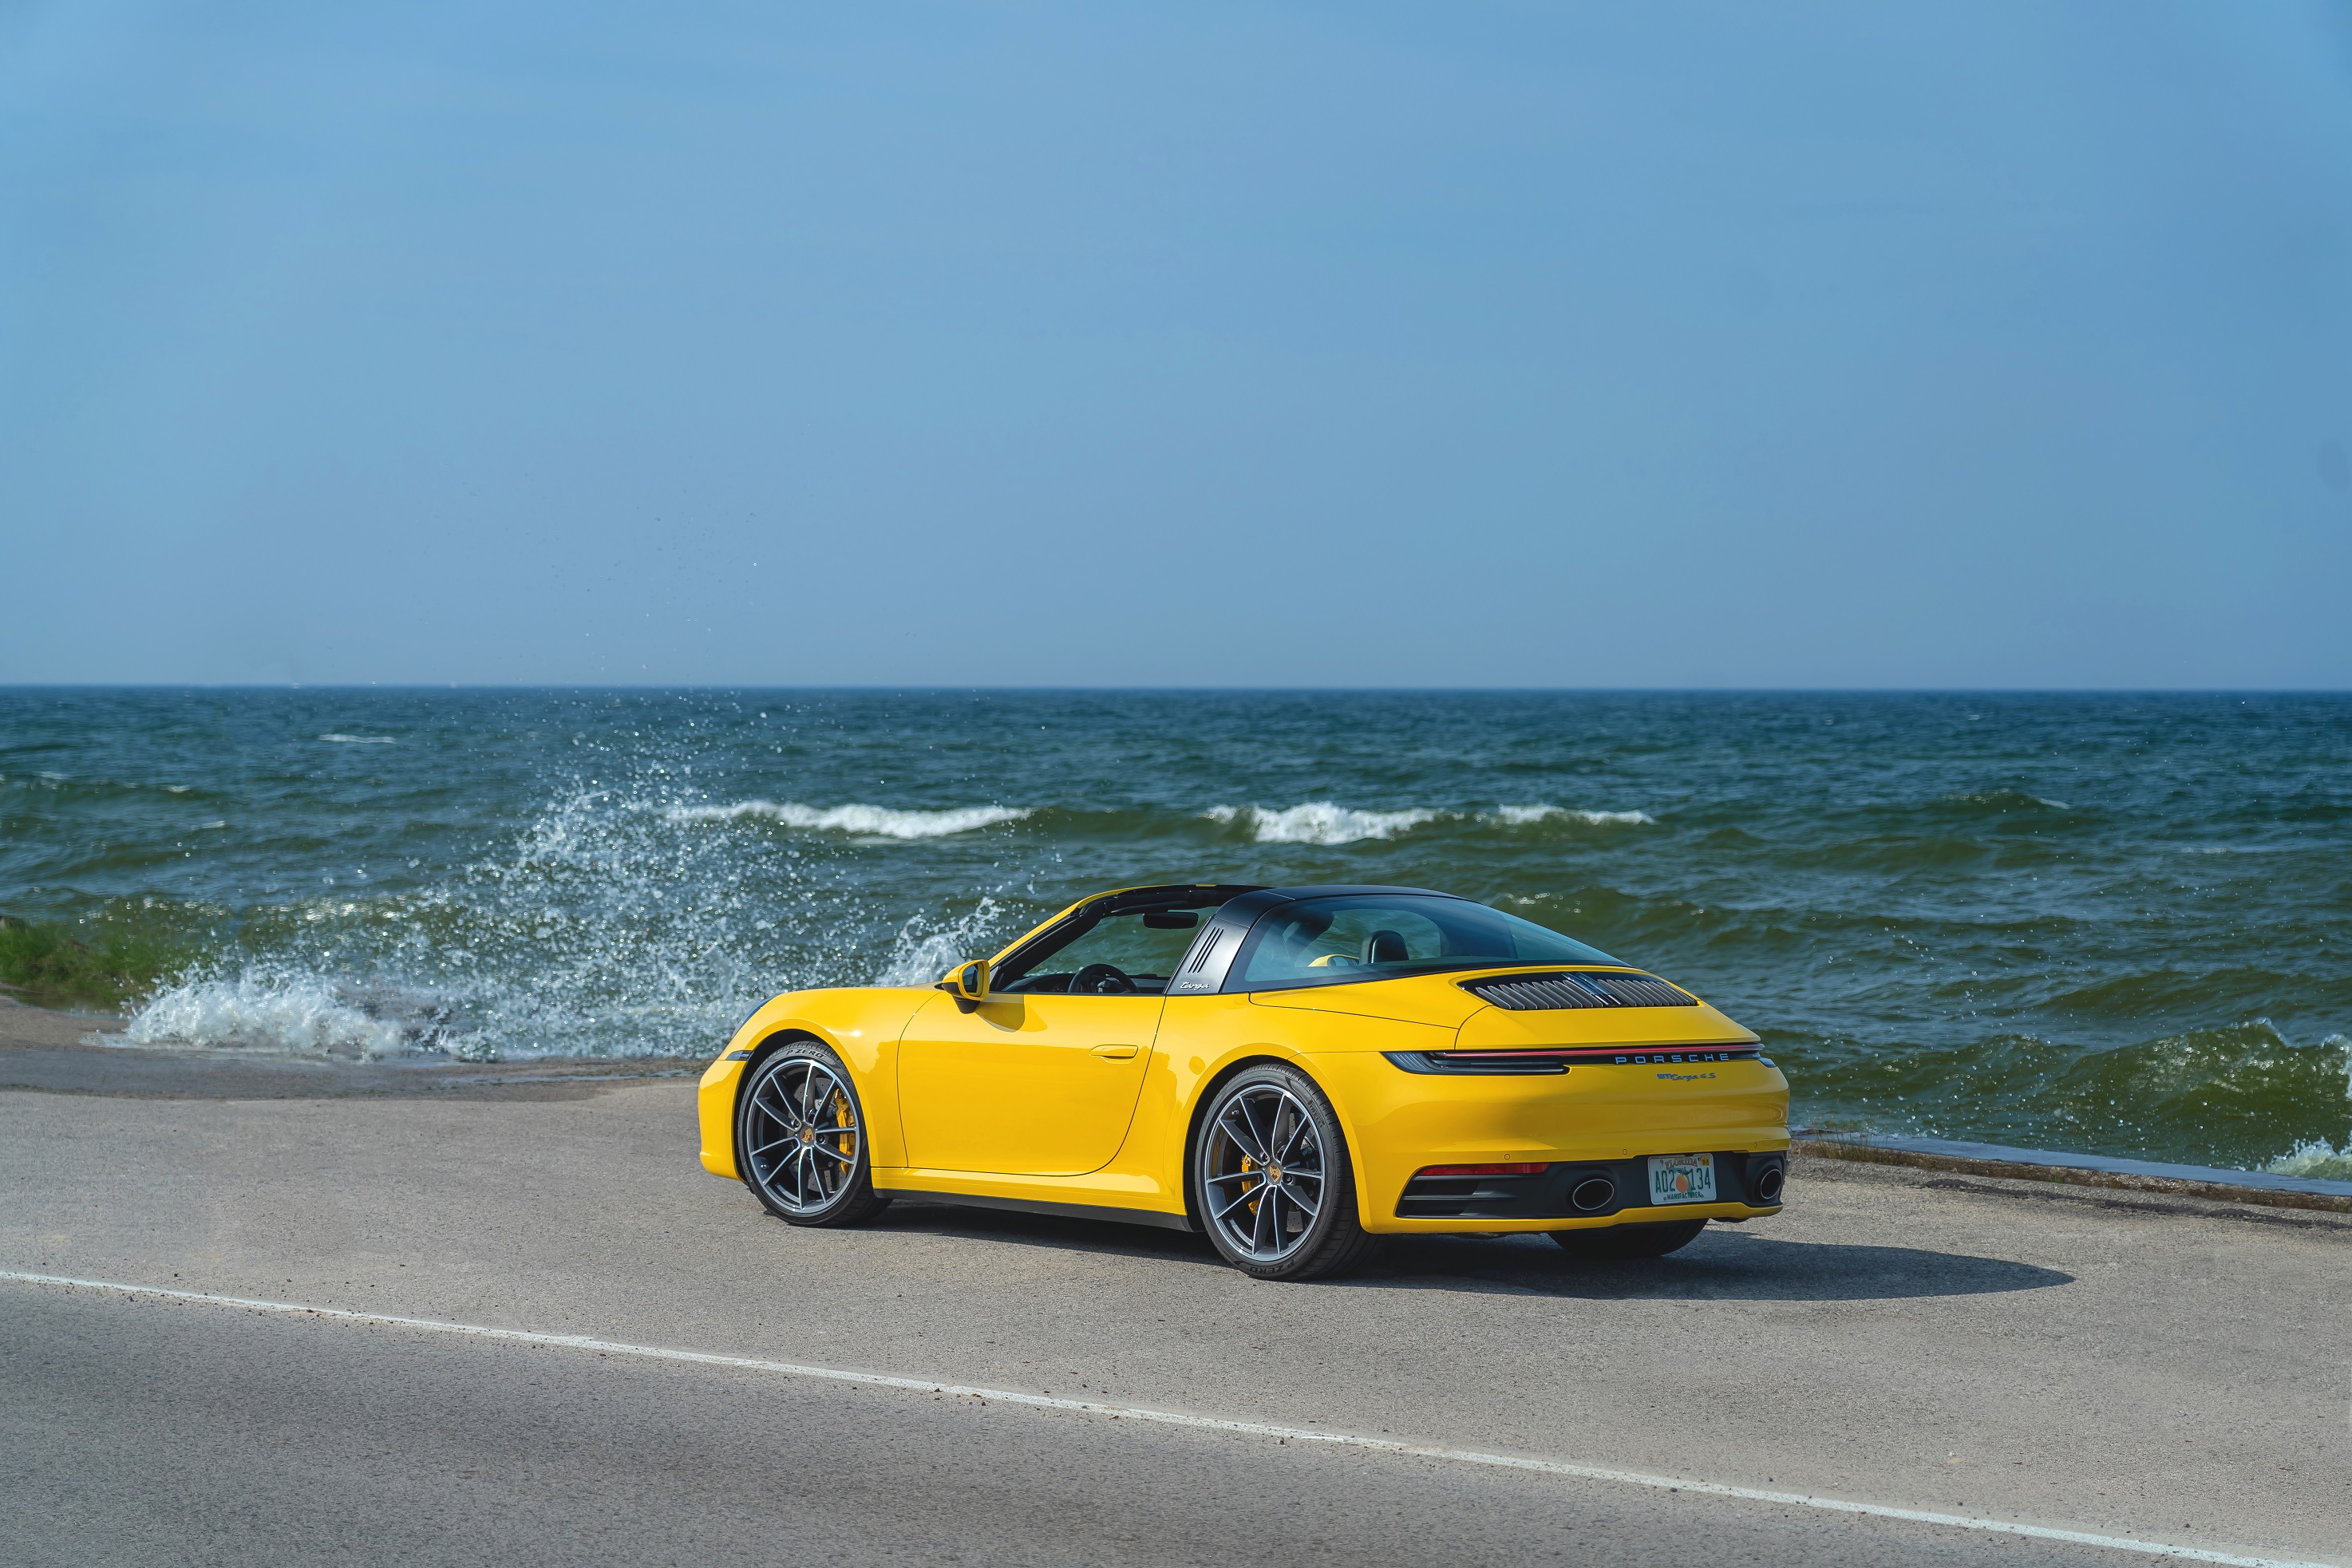 The rear 3/4 view of a yellow 2022 Porsche 911 Targa 4S by the ocean